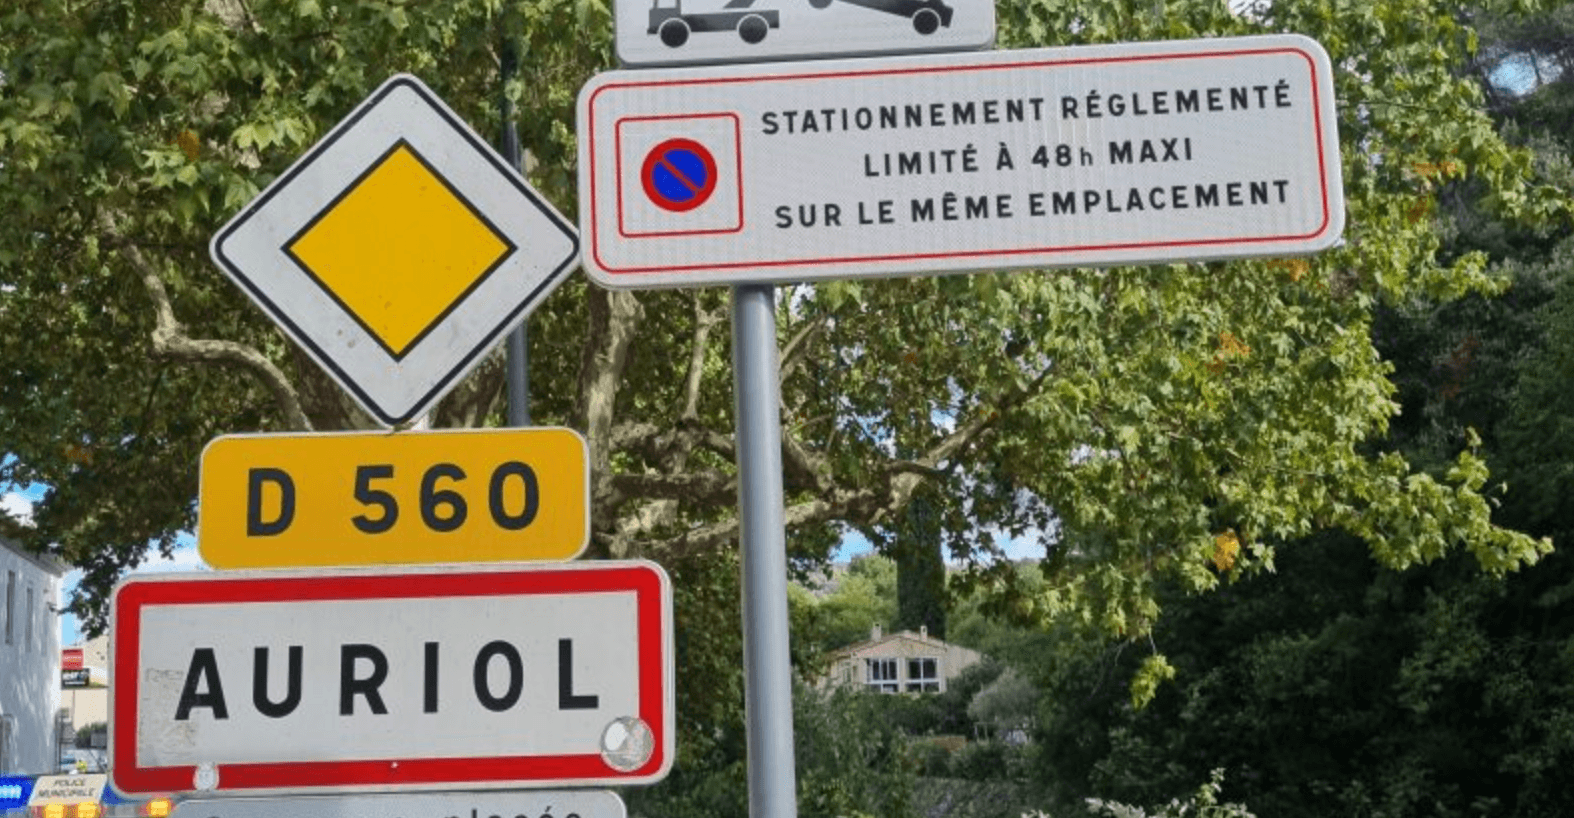 Panneau stationnement réglementé limité à 48 heures à Auriol ©mairie-auriol.fr